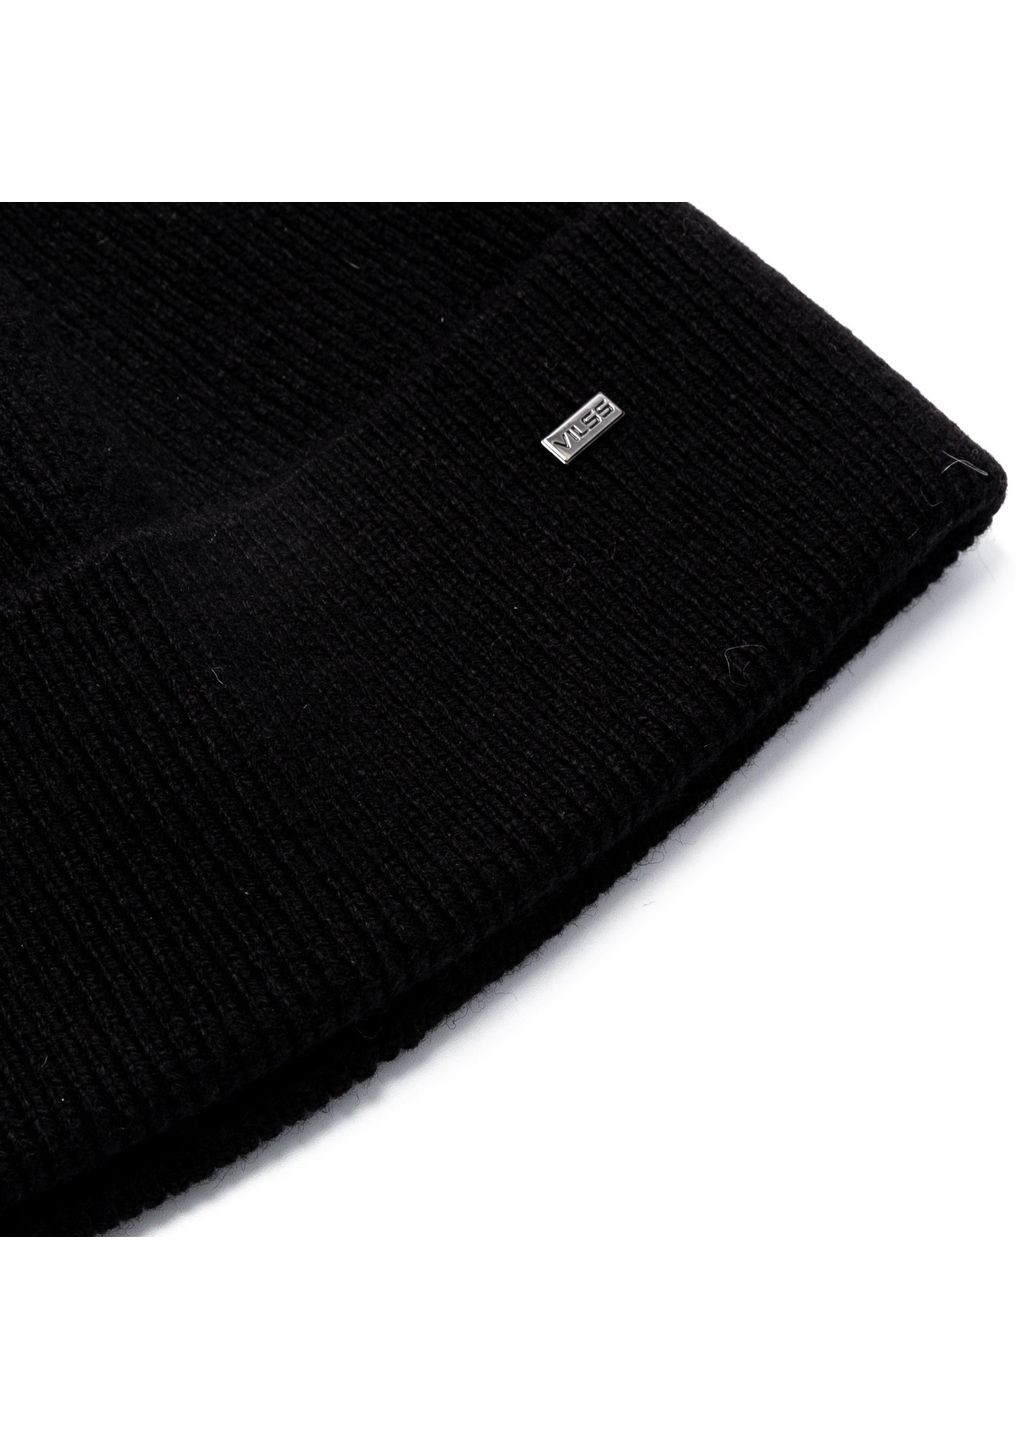 Шапка по голове мужская шерсть с кашемиром черная ФРАНК 330-160 LuckyLOOK 330-160m (289358213)